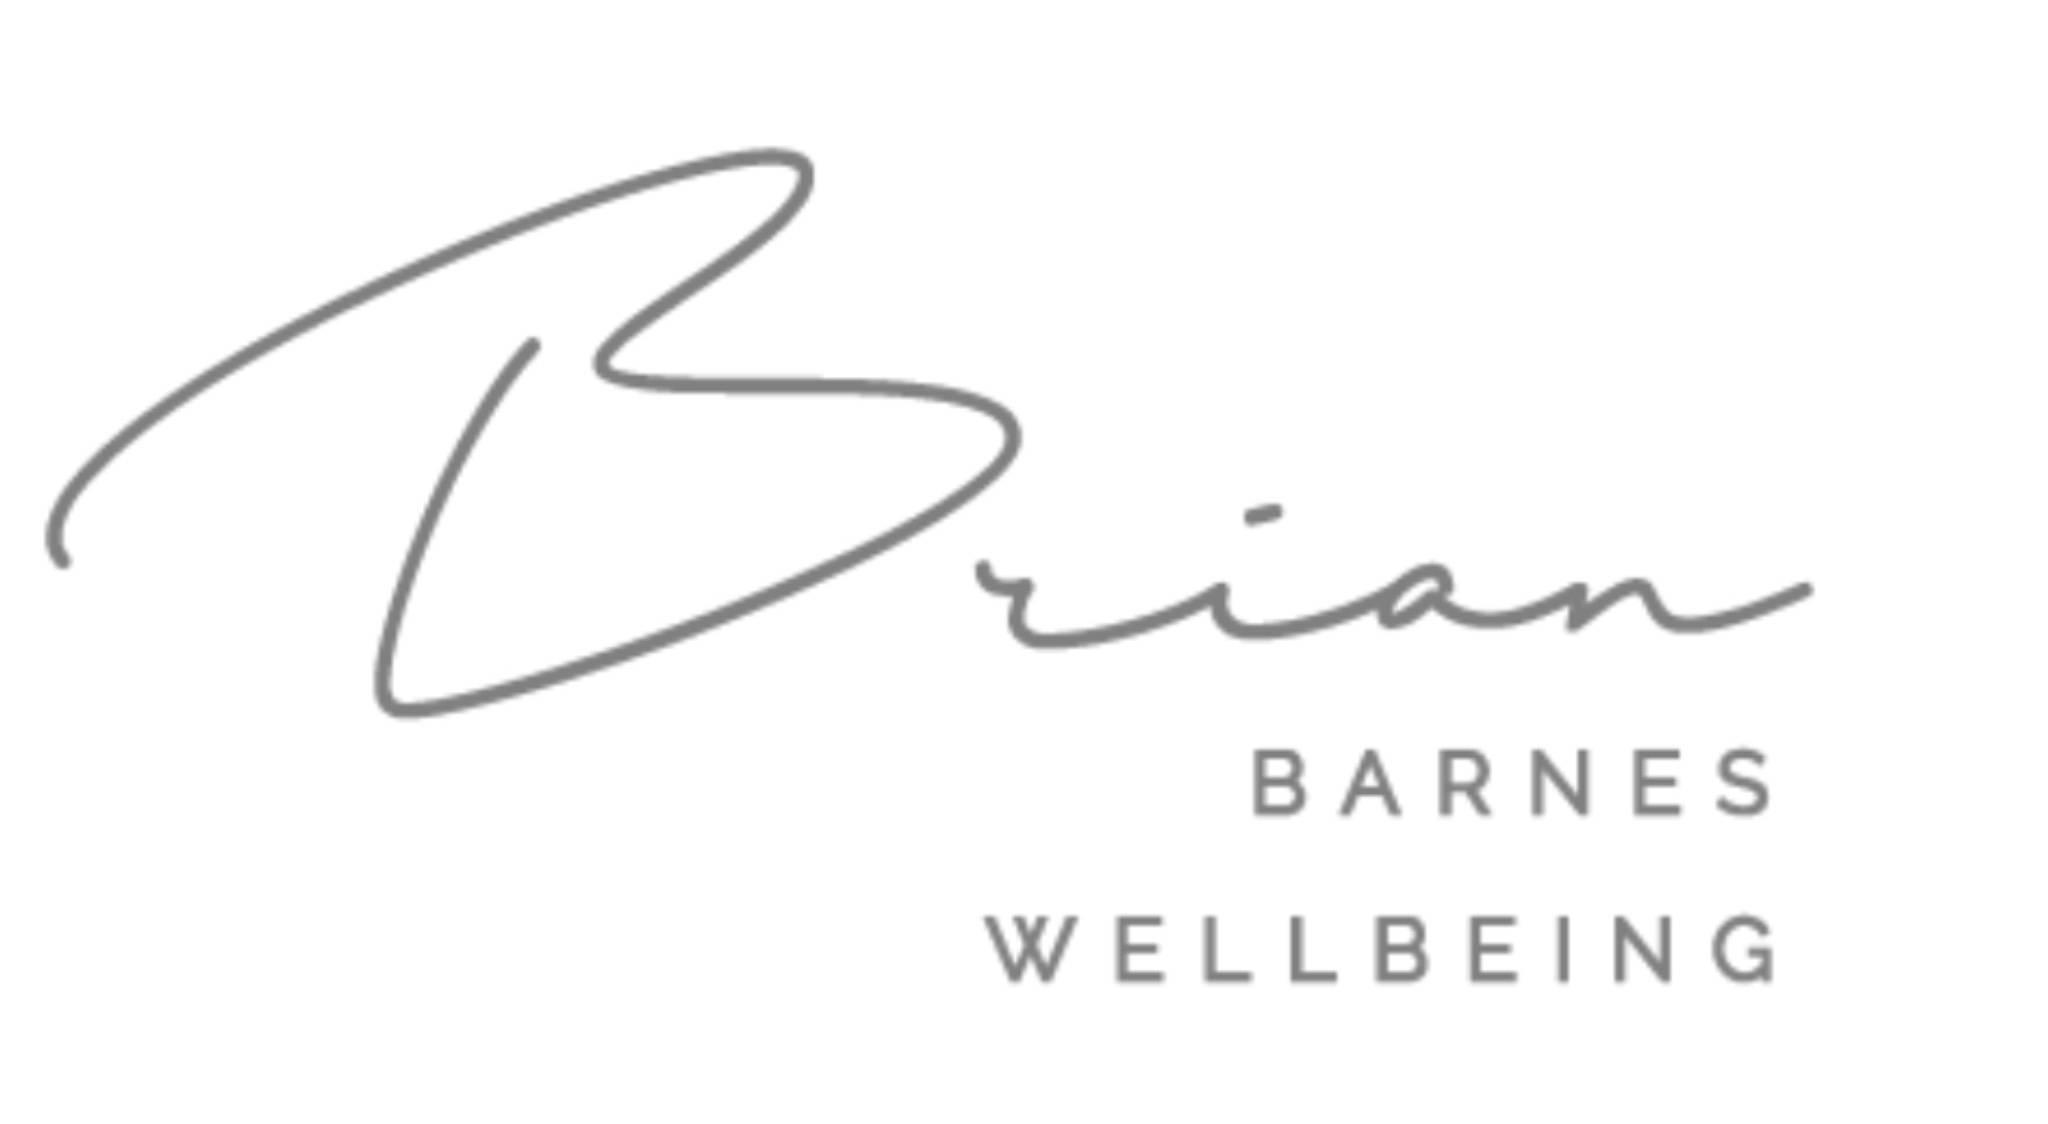 Brian Barnes Wellbeing